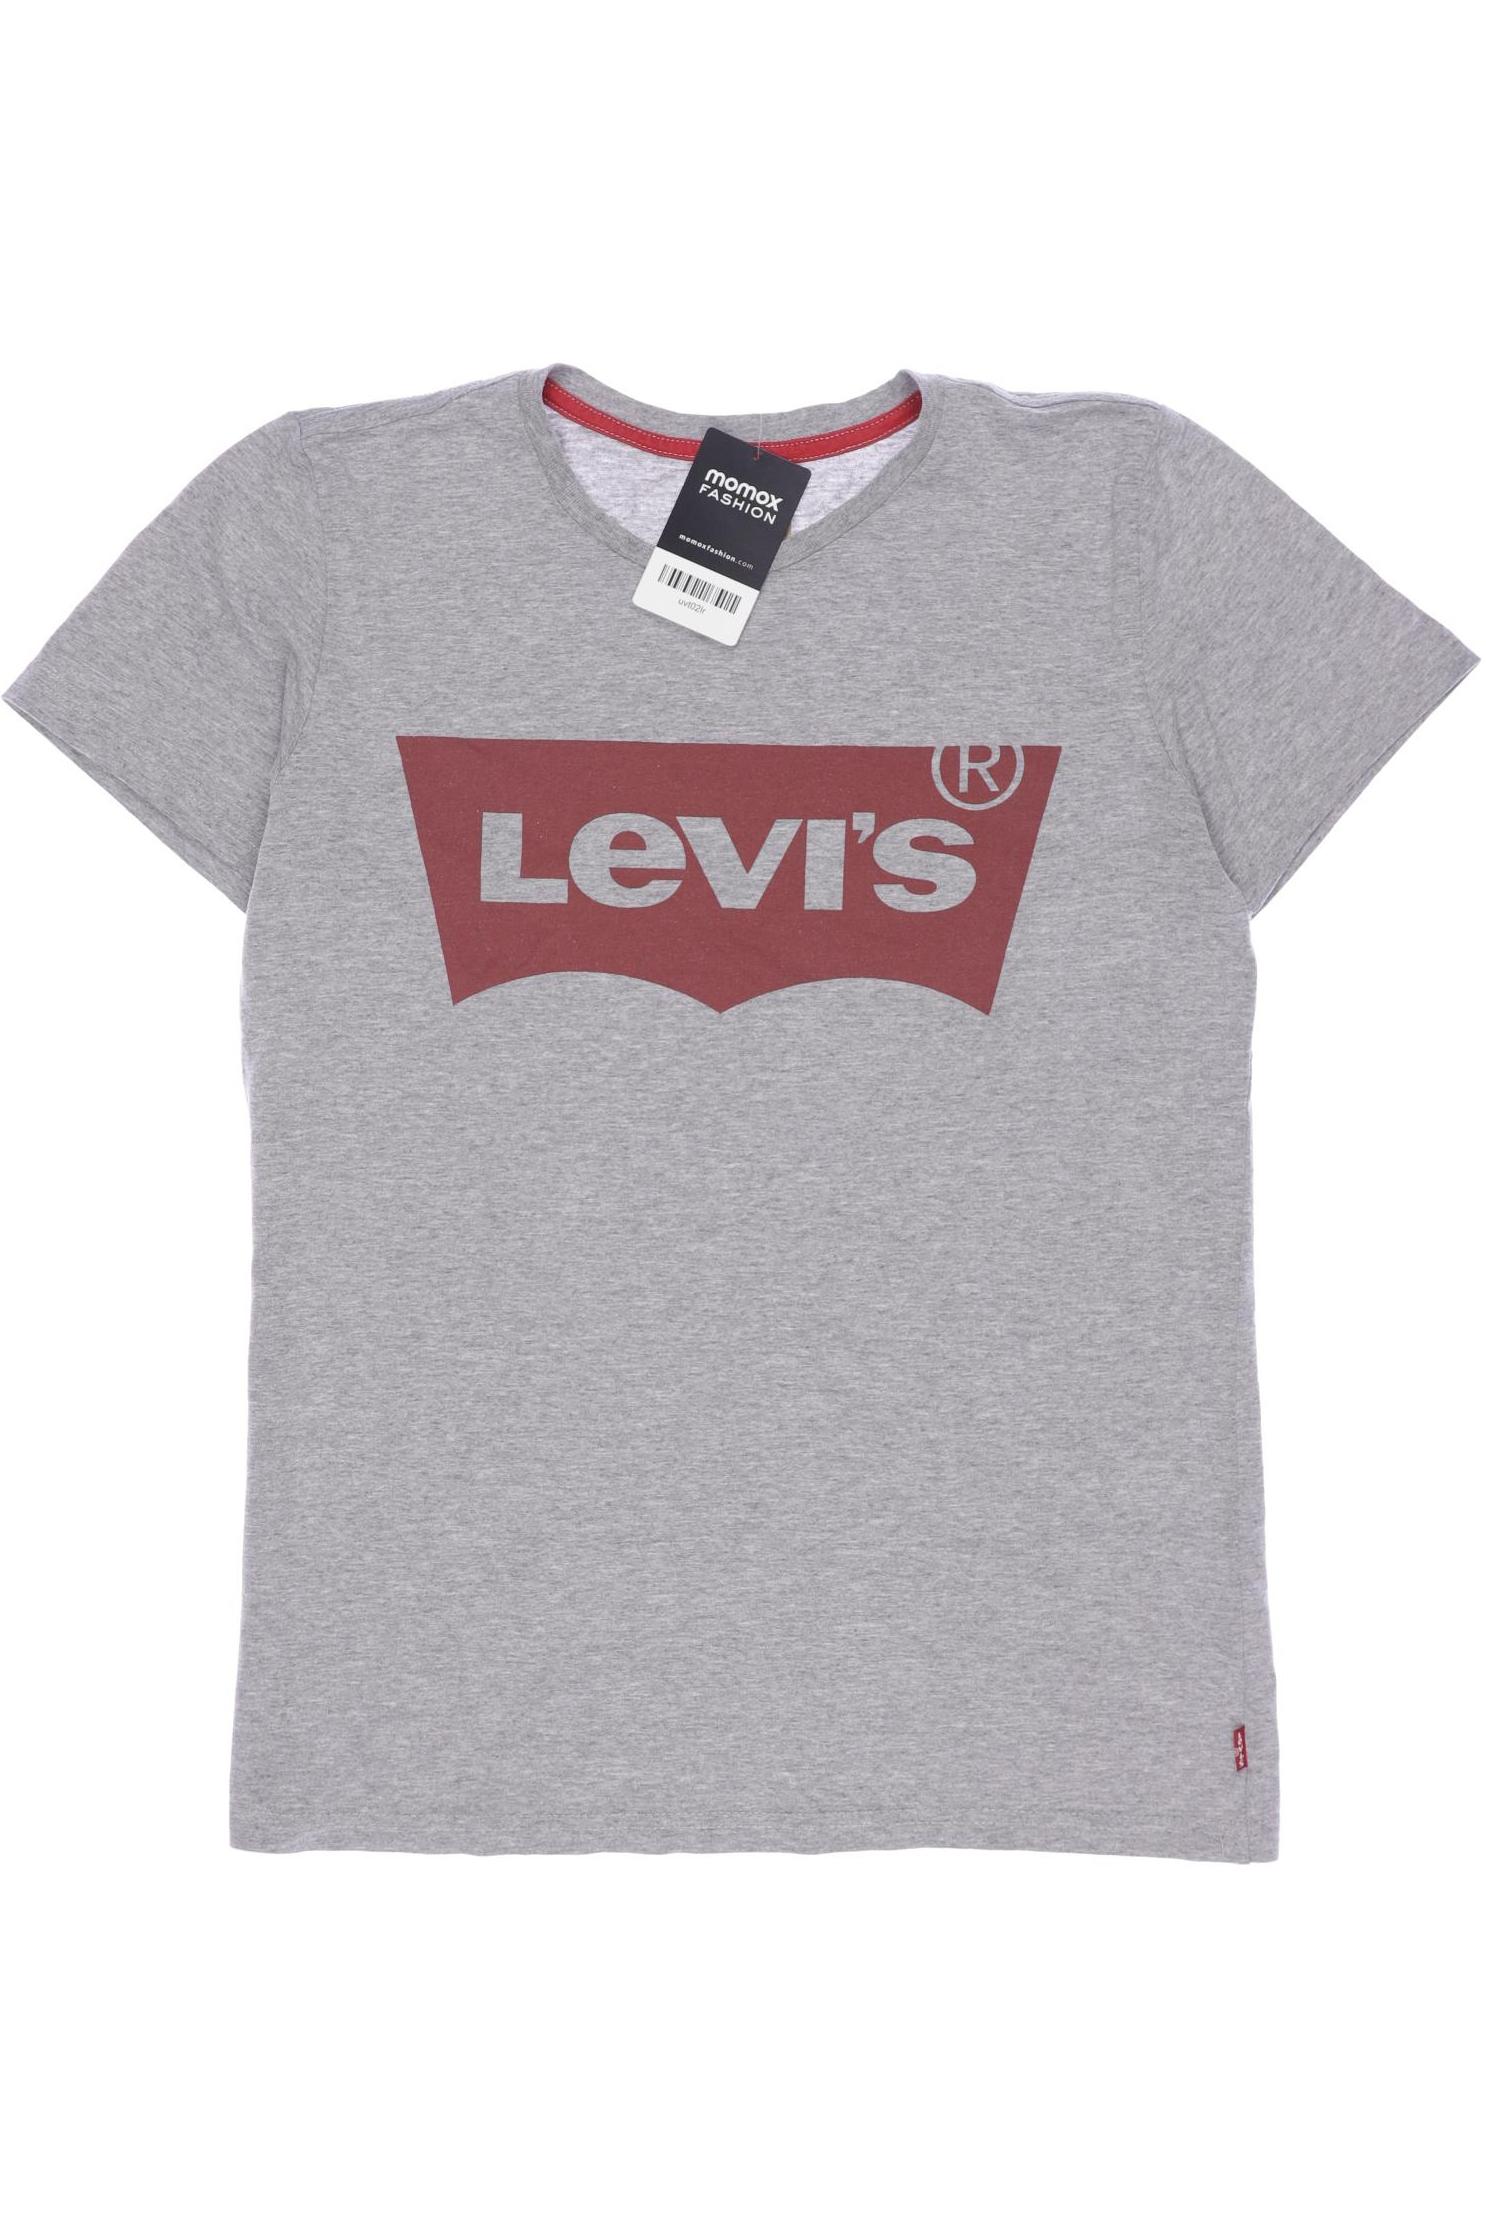 Levis Herren T-Shirt, grau, Gr. 176 von Levis